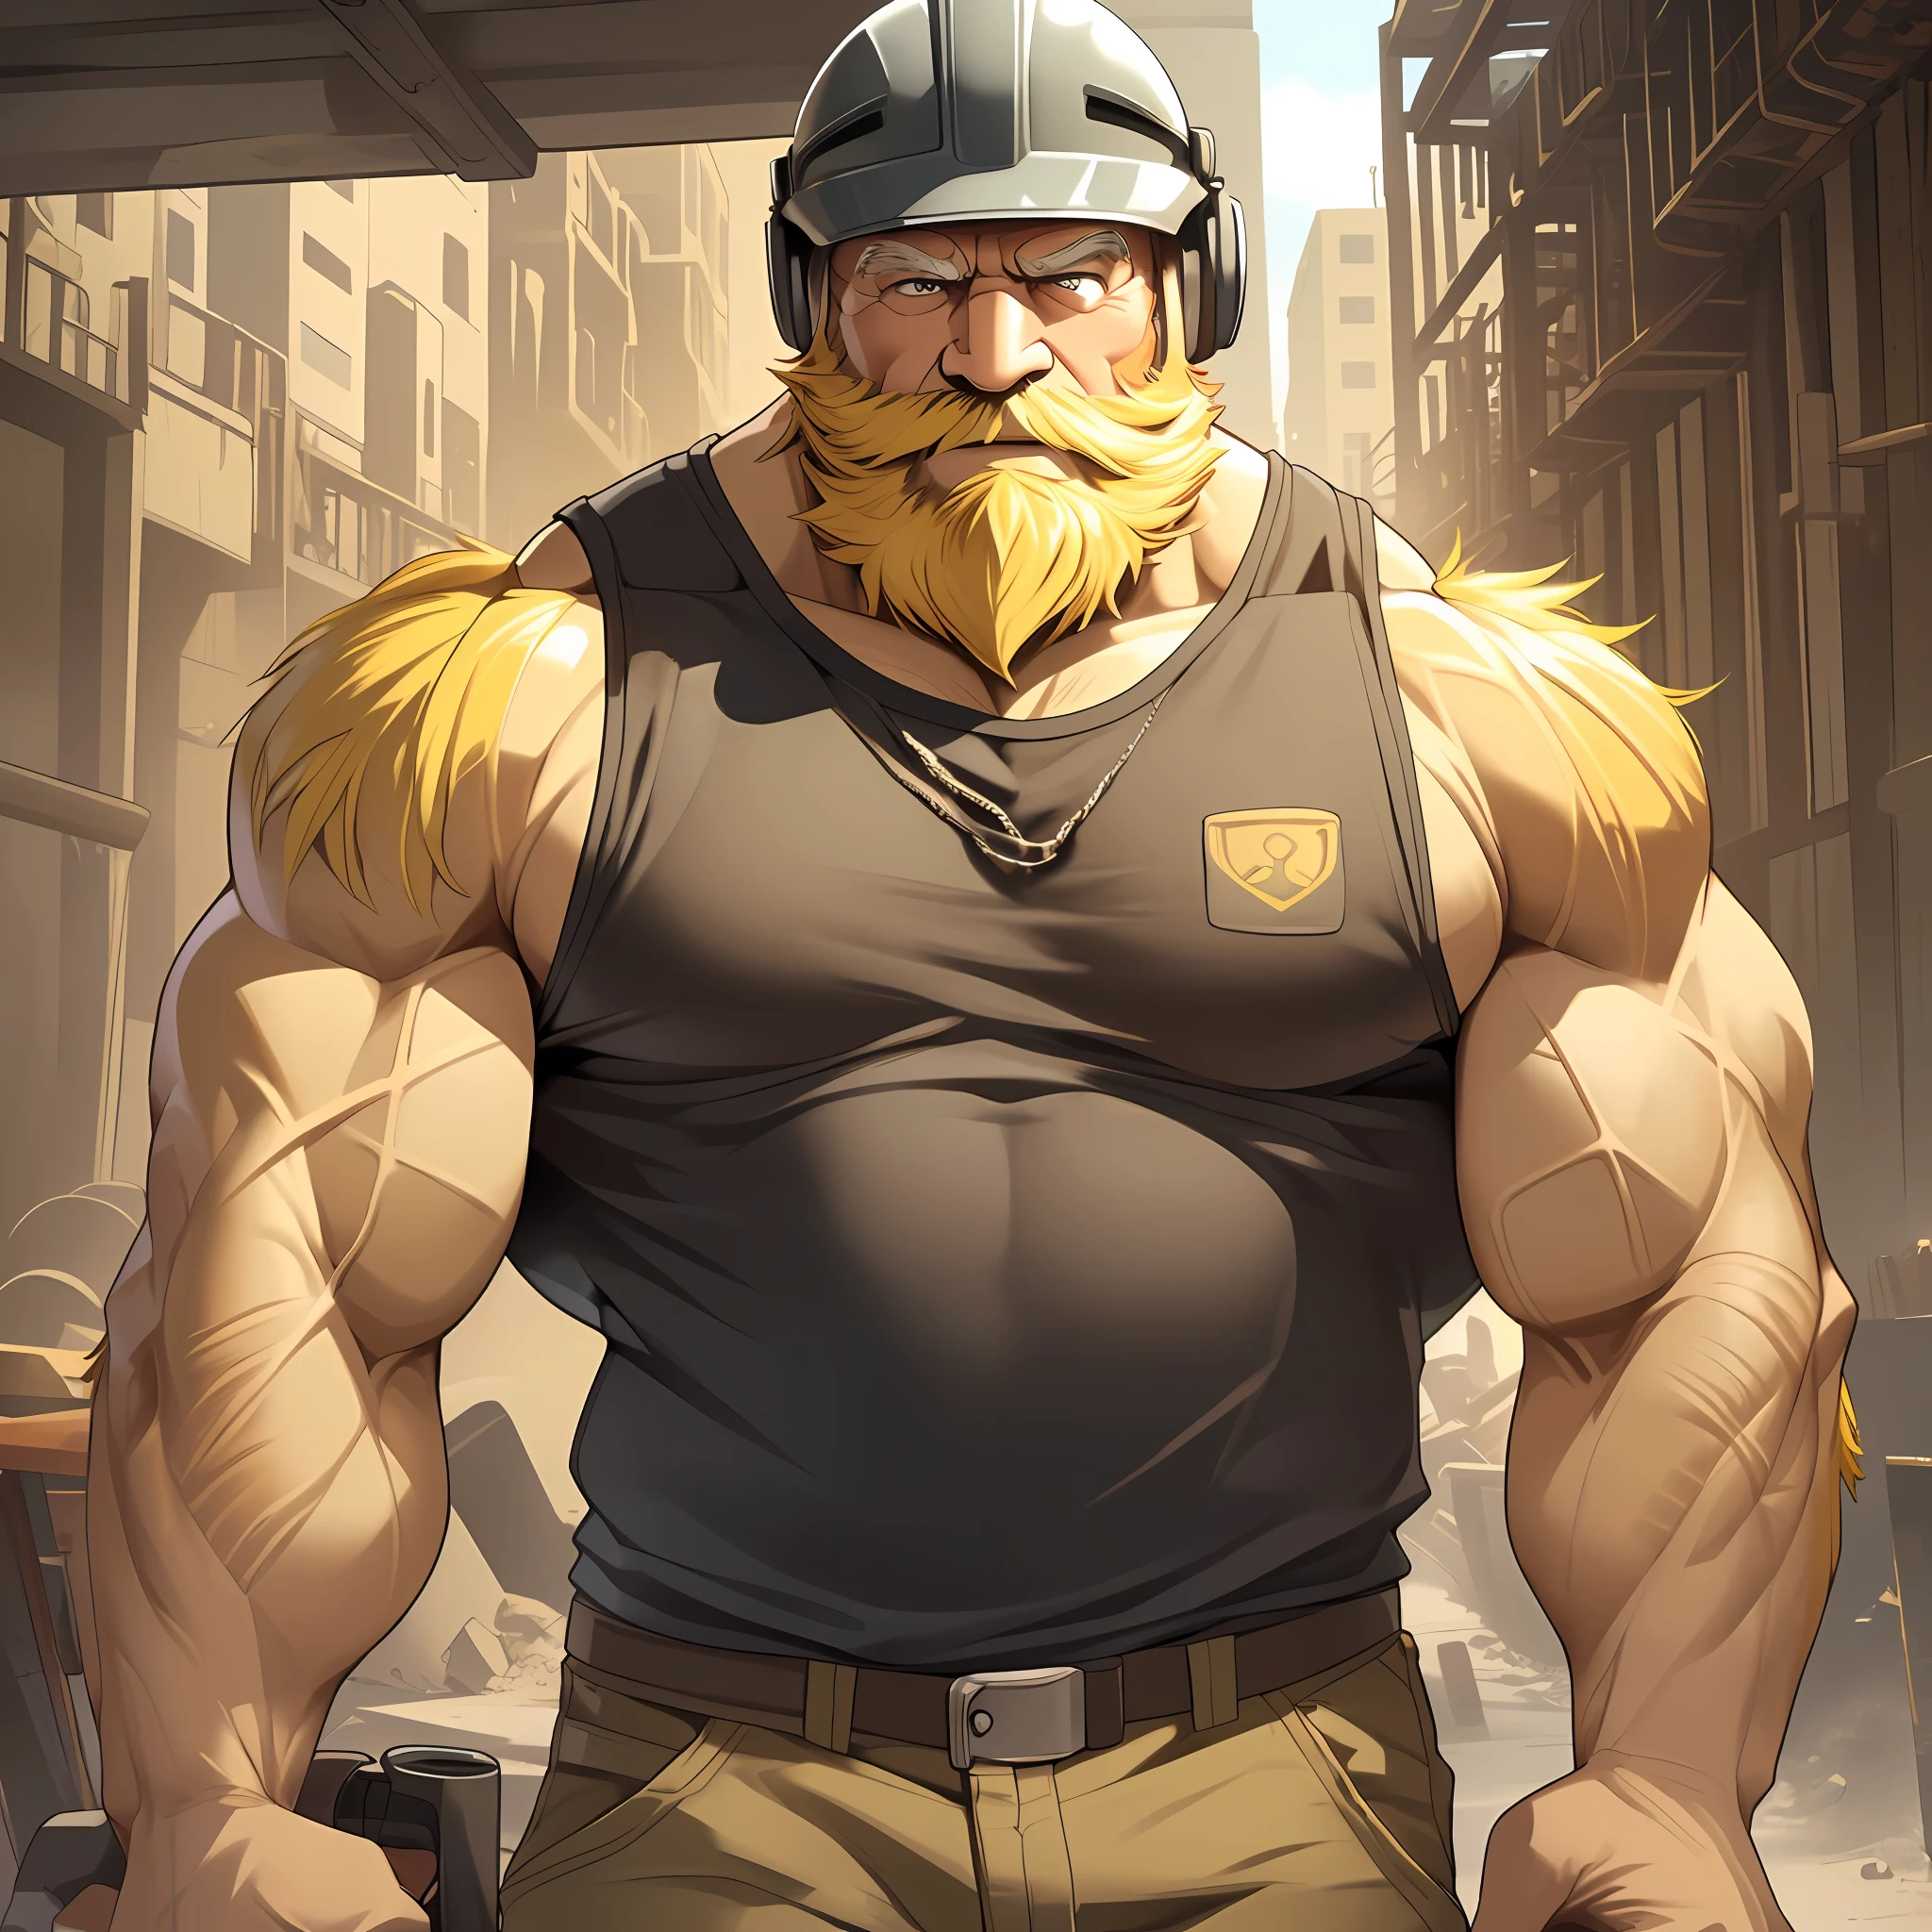 A 巨大的肌肉 老人 walking on construction site he shouldered a heavy iron, 他戴著安全帽，穿著背心, (老人 (巨大的肌肉, 大手臂, 大胸, 大胸肌, 大二頭肌, 極為細緻的肌肉, 短髮, 有胡须的, 黄头发))